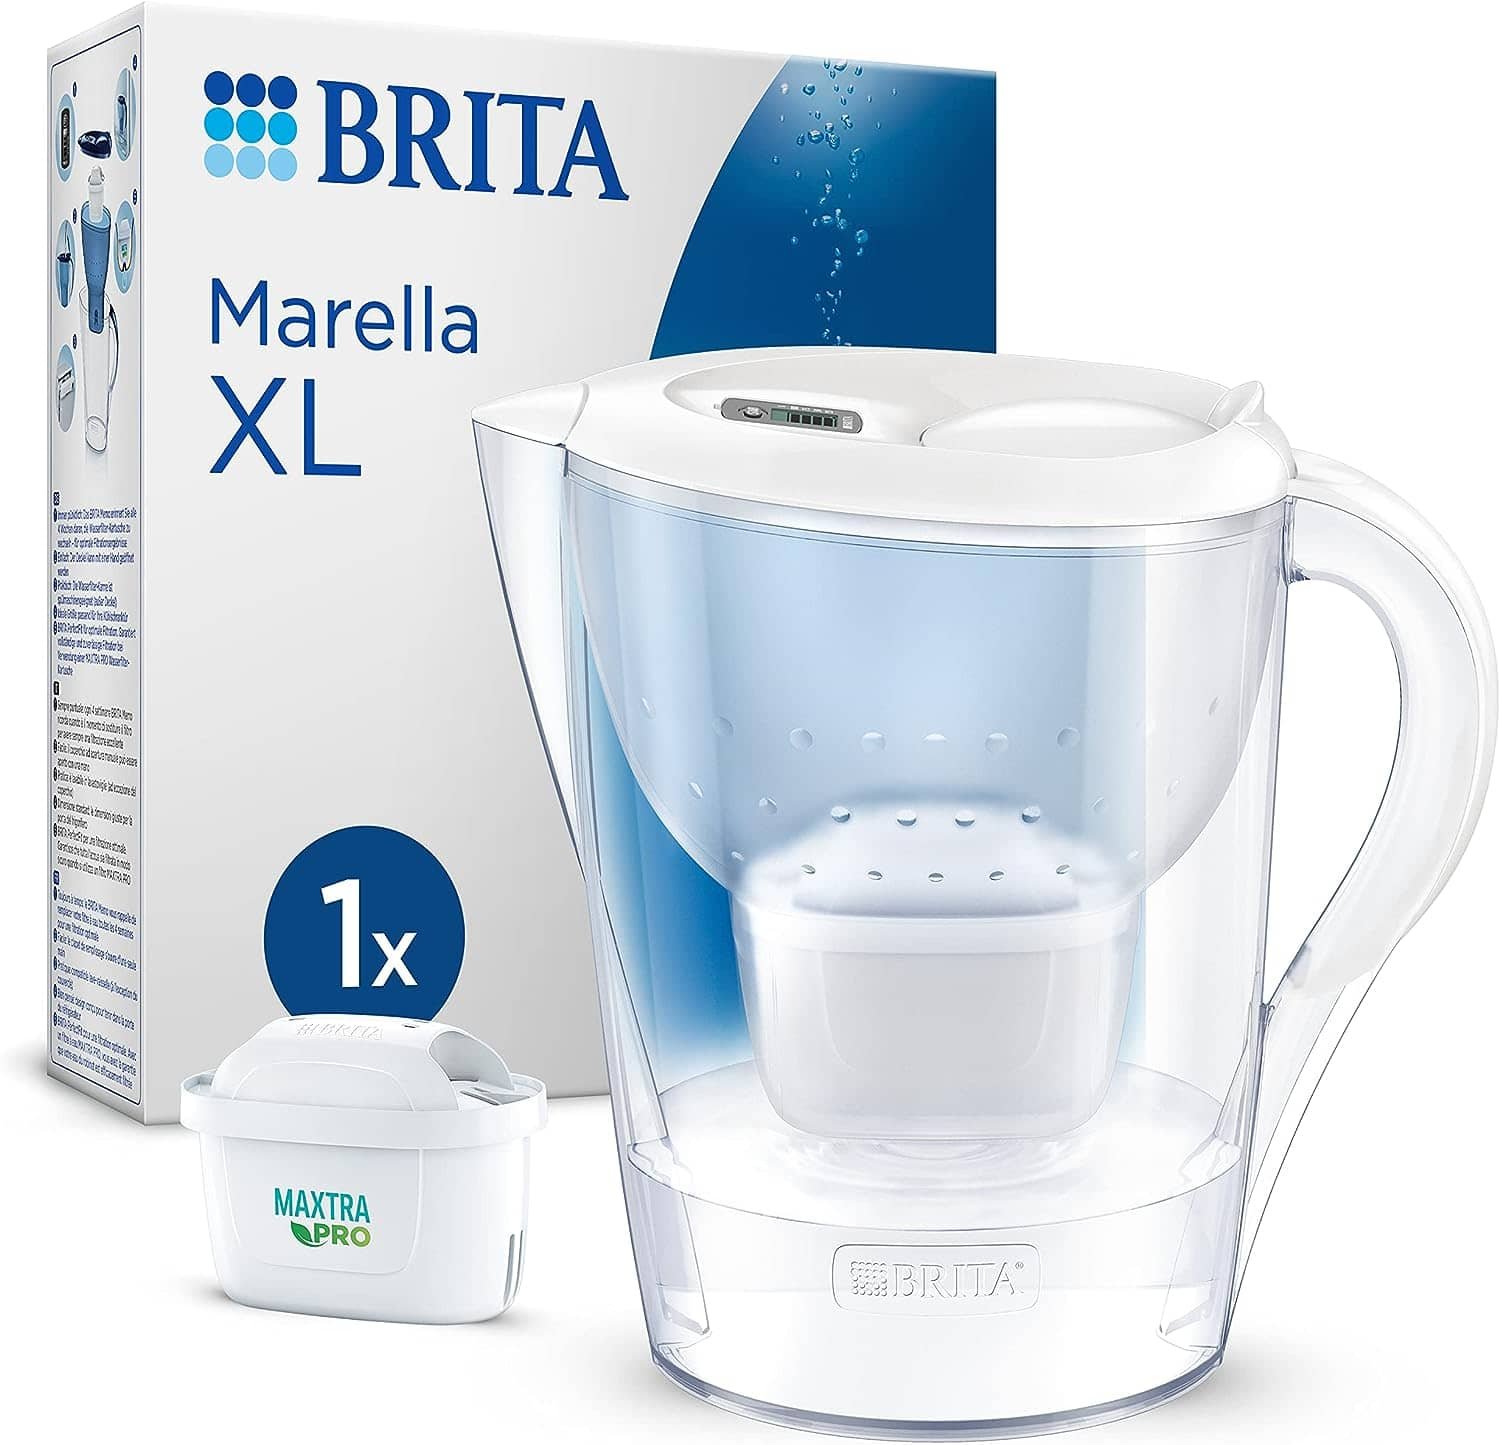 BRITA Marella XL Water Filter Jug, White 1X MAXTRA PRO cartridge